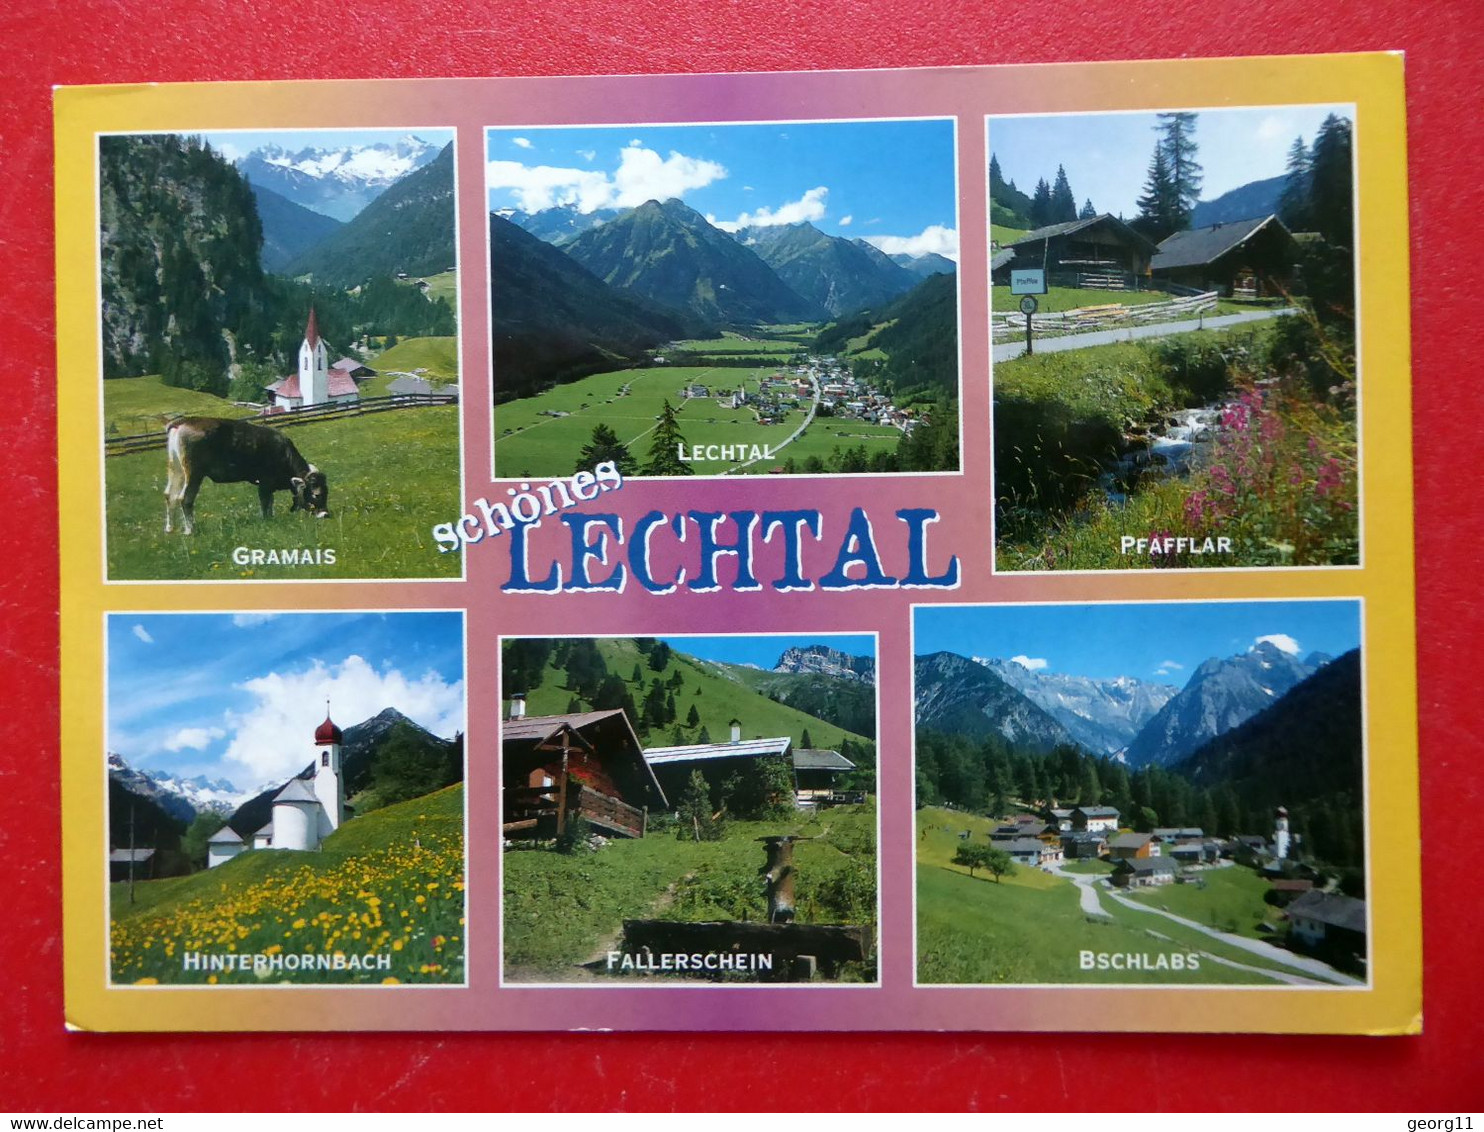 Lechtal - Pfafflar - Gramais - Hinterhornbach - Fallerschein - Vorarlberg Tirol - Österreich - Lechtal